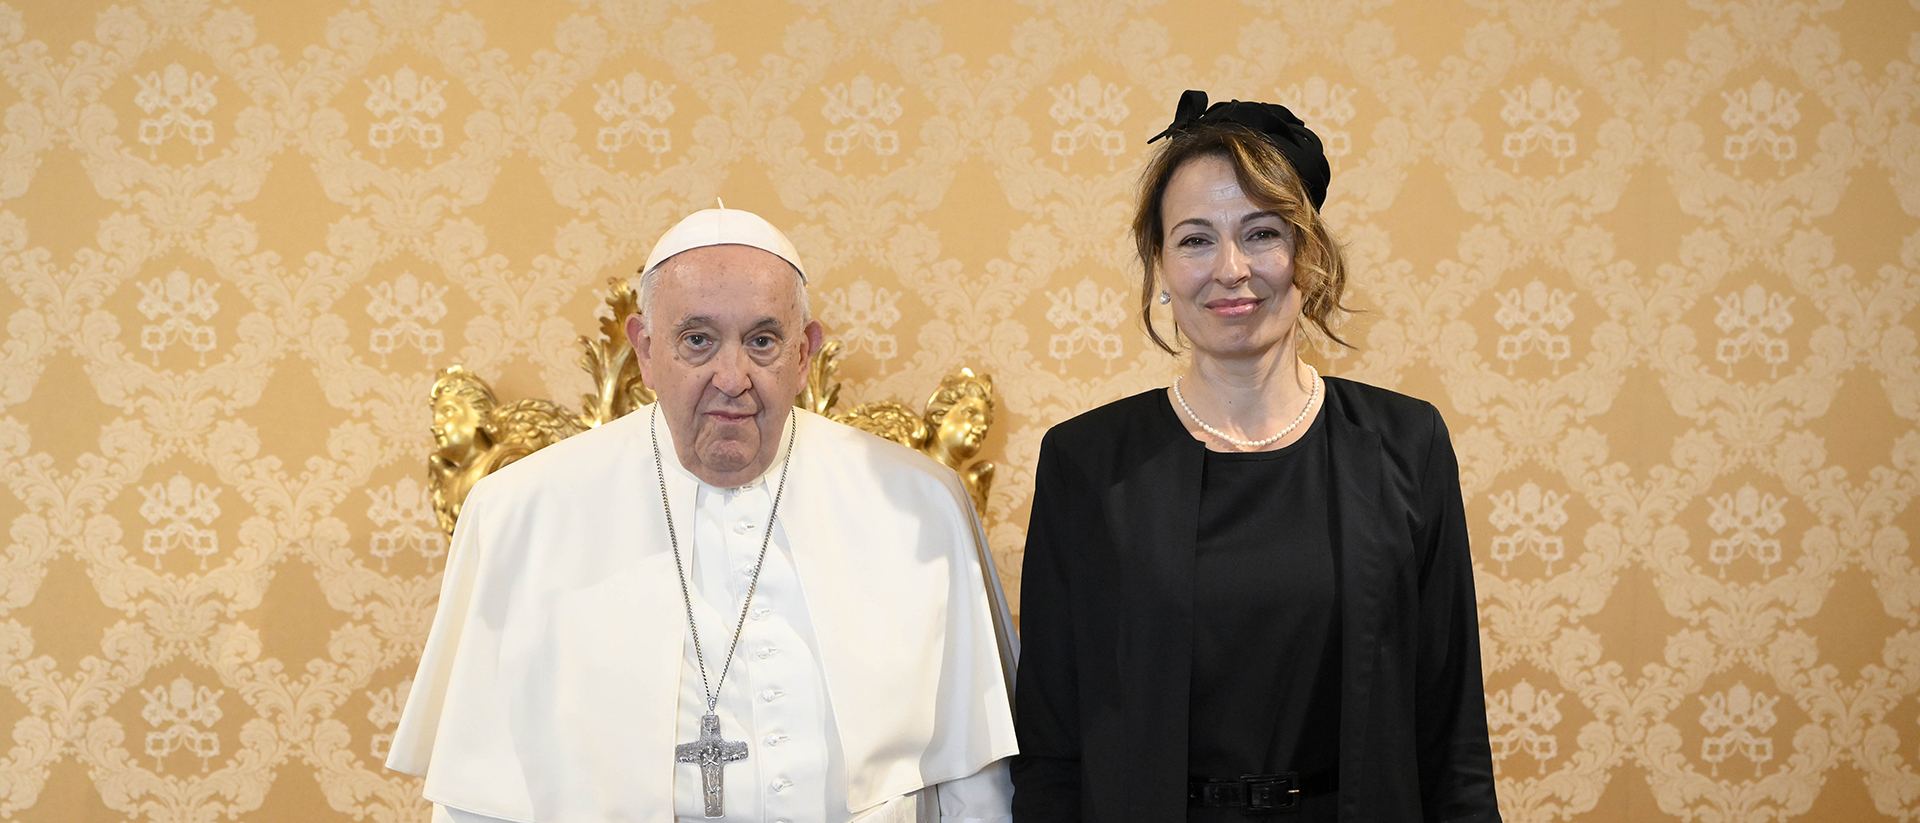 Manuela Leimgruber succède à Denis Knobel, premier ambassadeur résident près le Saint-Siège | © Vatican Media